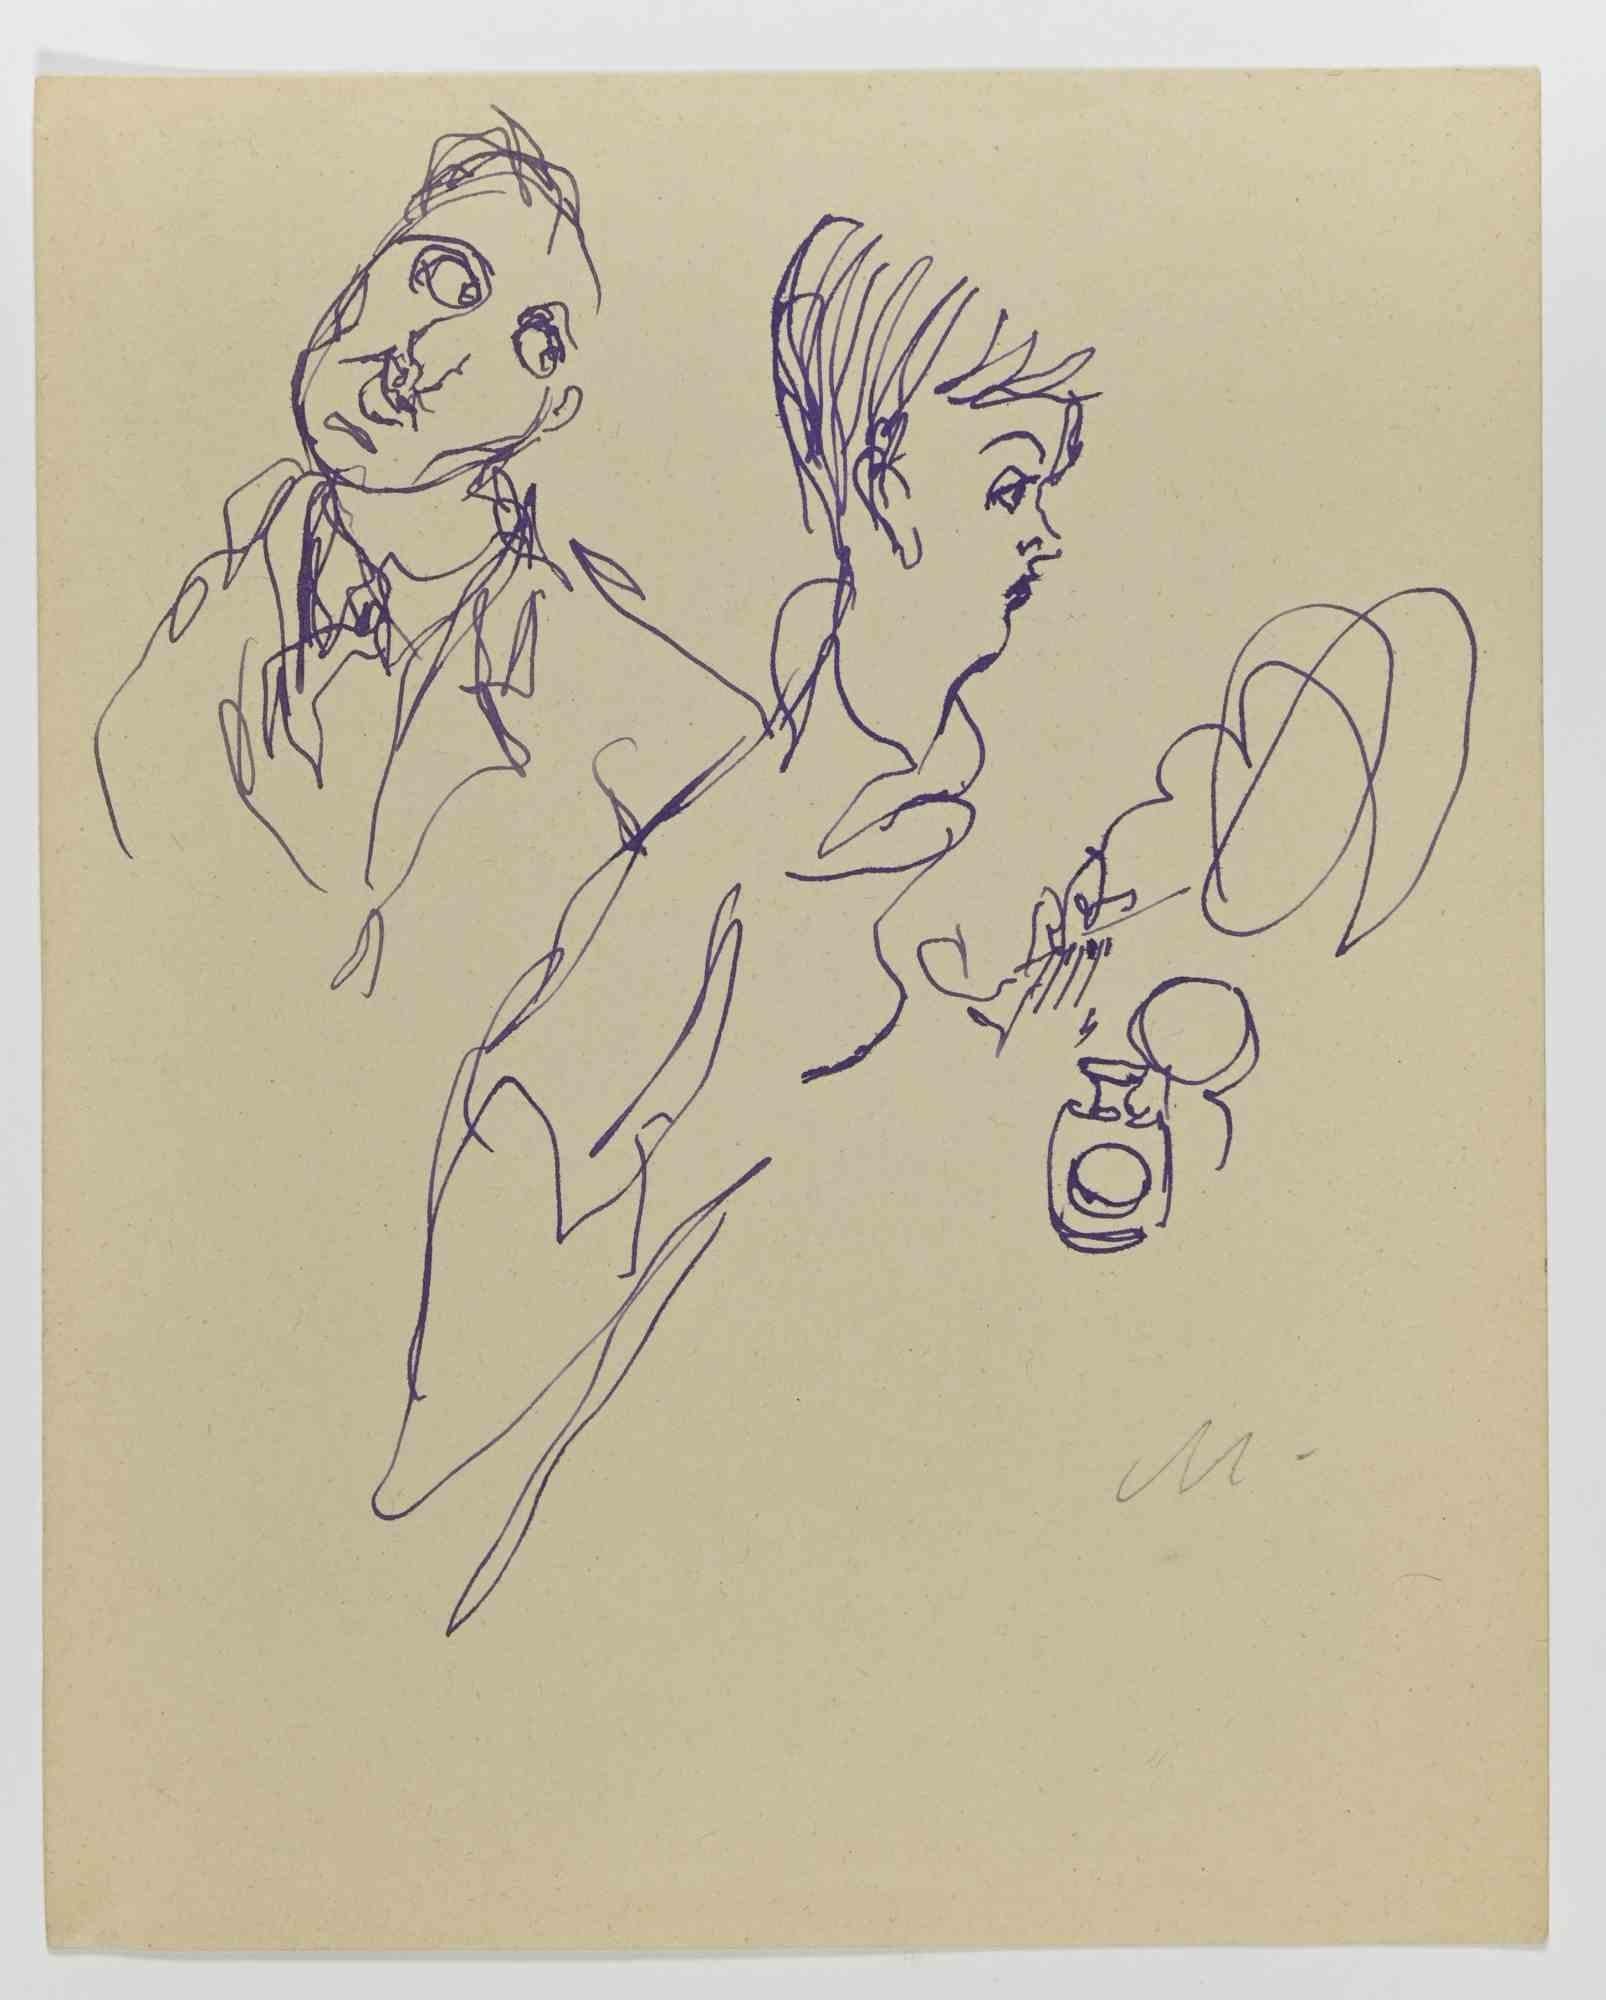 Das Paar ist eine Federzeichnung von Mino Maccari  (1924-1989) im Jahr 1945 etwa.

Monogramme am unteren Rand.

Gute Bedingungen.

Mino Maccari (Siena, 1924-Rom, 16. Juni 1989) war ein italienischer Schriftsteller, Maler, Graveur und Journalist, der